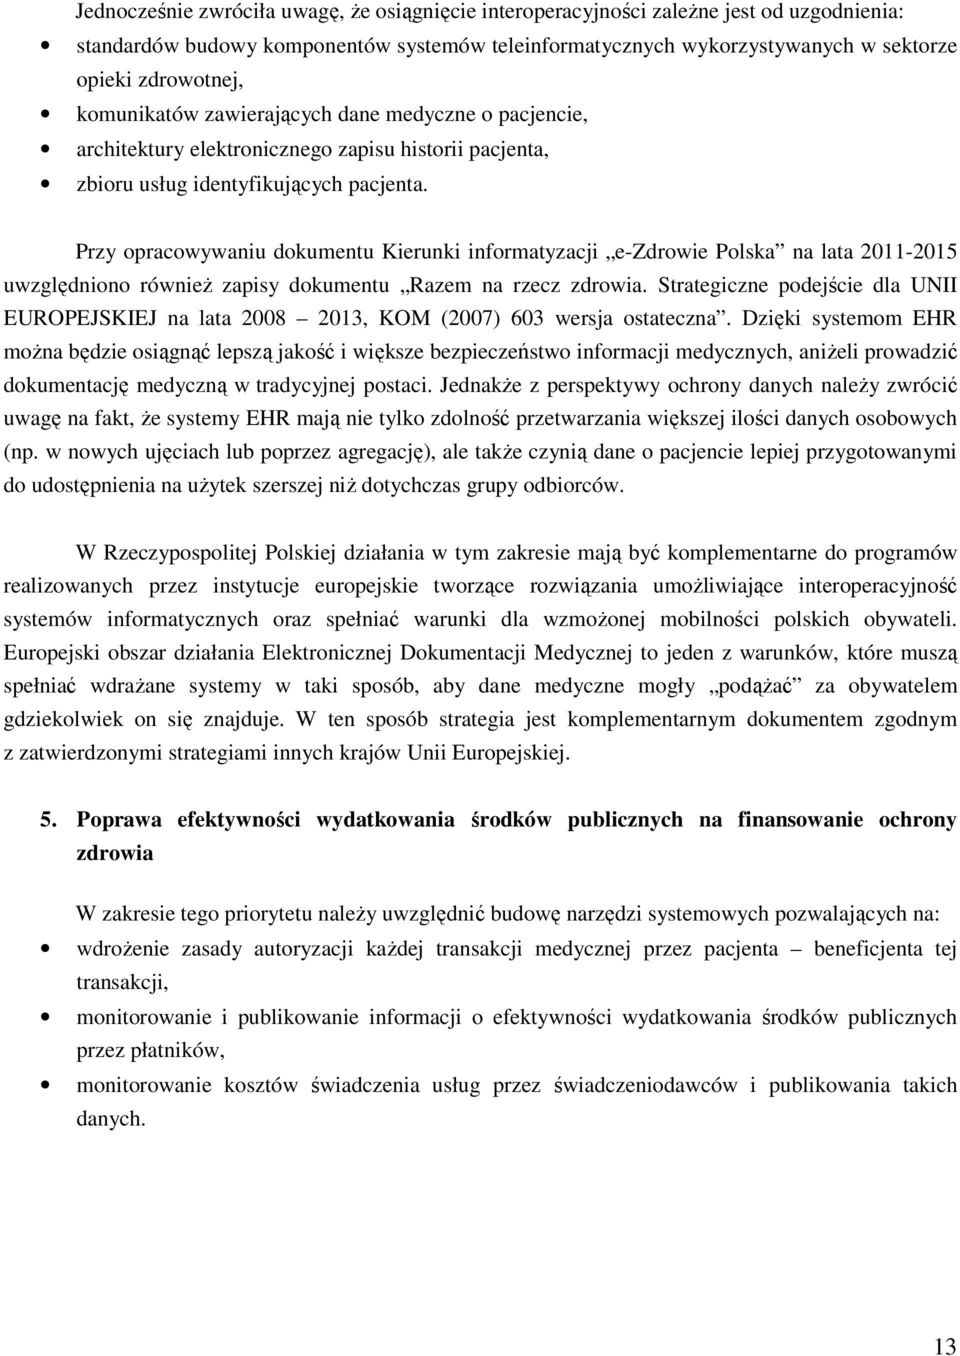 Przy opracowywaniu dokumentu Kierunki informatyzacji e-zdrowie Polska na lata 2011-2015 uwzględniono również zapisy dokumentu Razem na rzecz zdrowia.